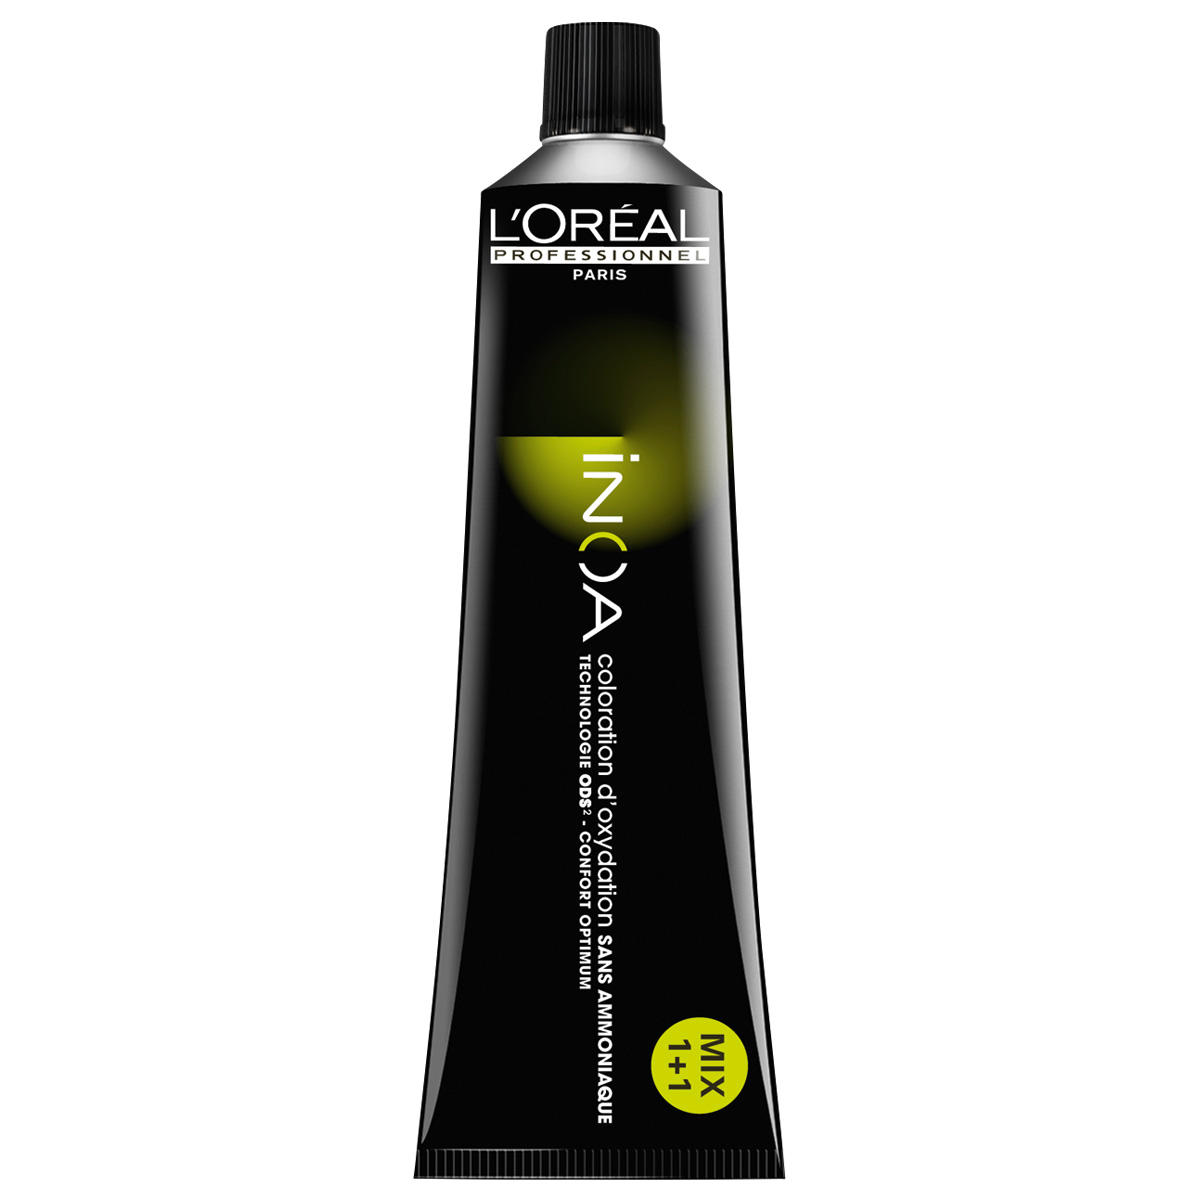 L'Oréal Professionnel Paris Coloration 6,34 Rubio oscuro dorado cobrizo, tubo 60 ml - 1